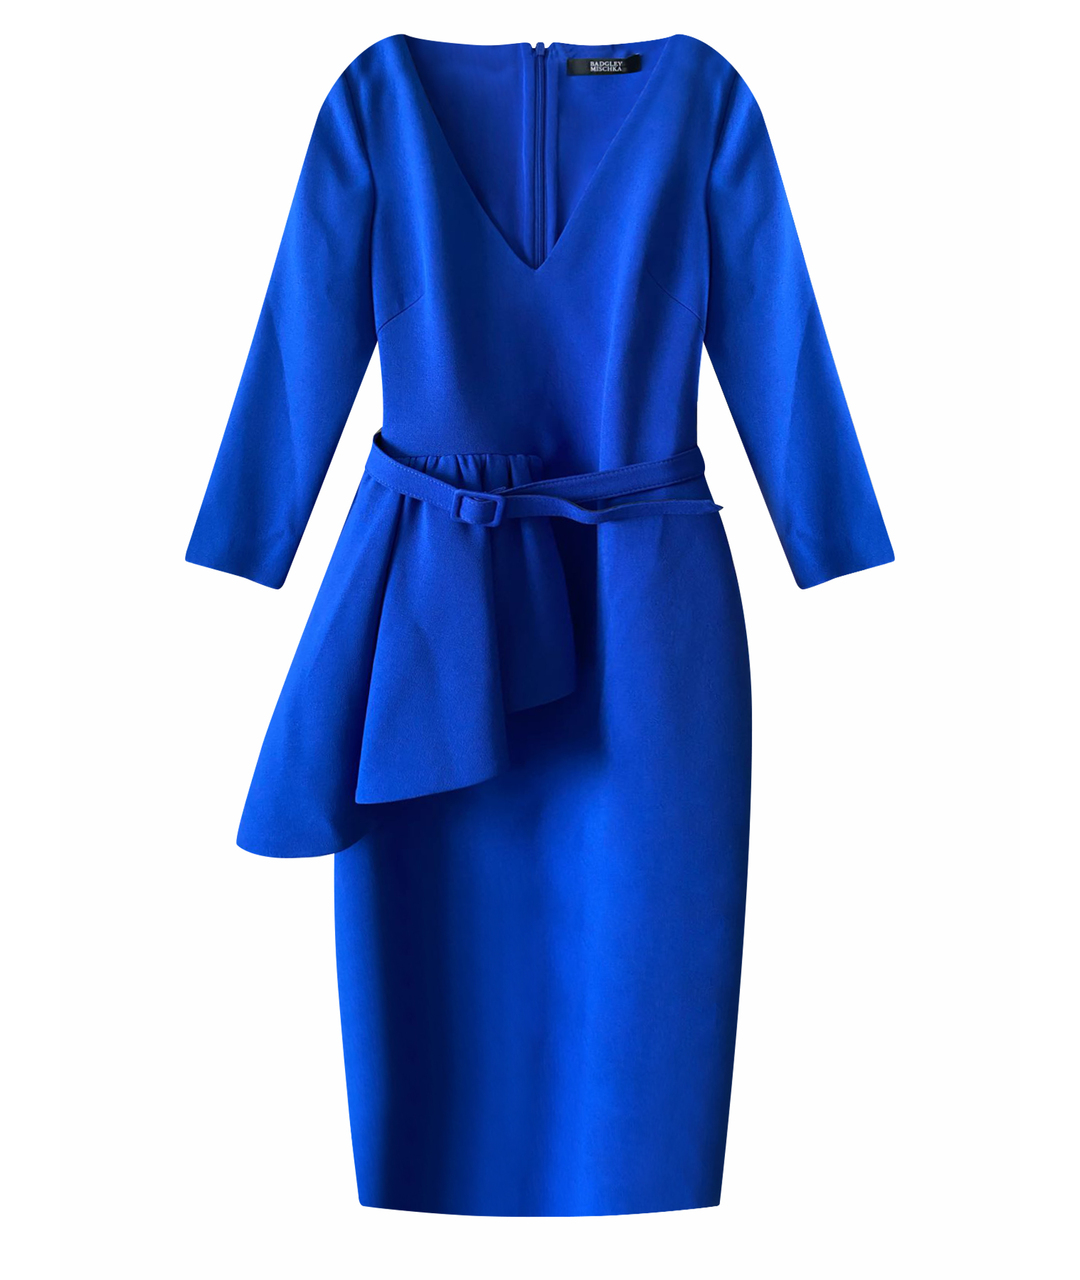 BADGLEY MISCHKA Синее синтетическое повседневное платье, фото 1